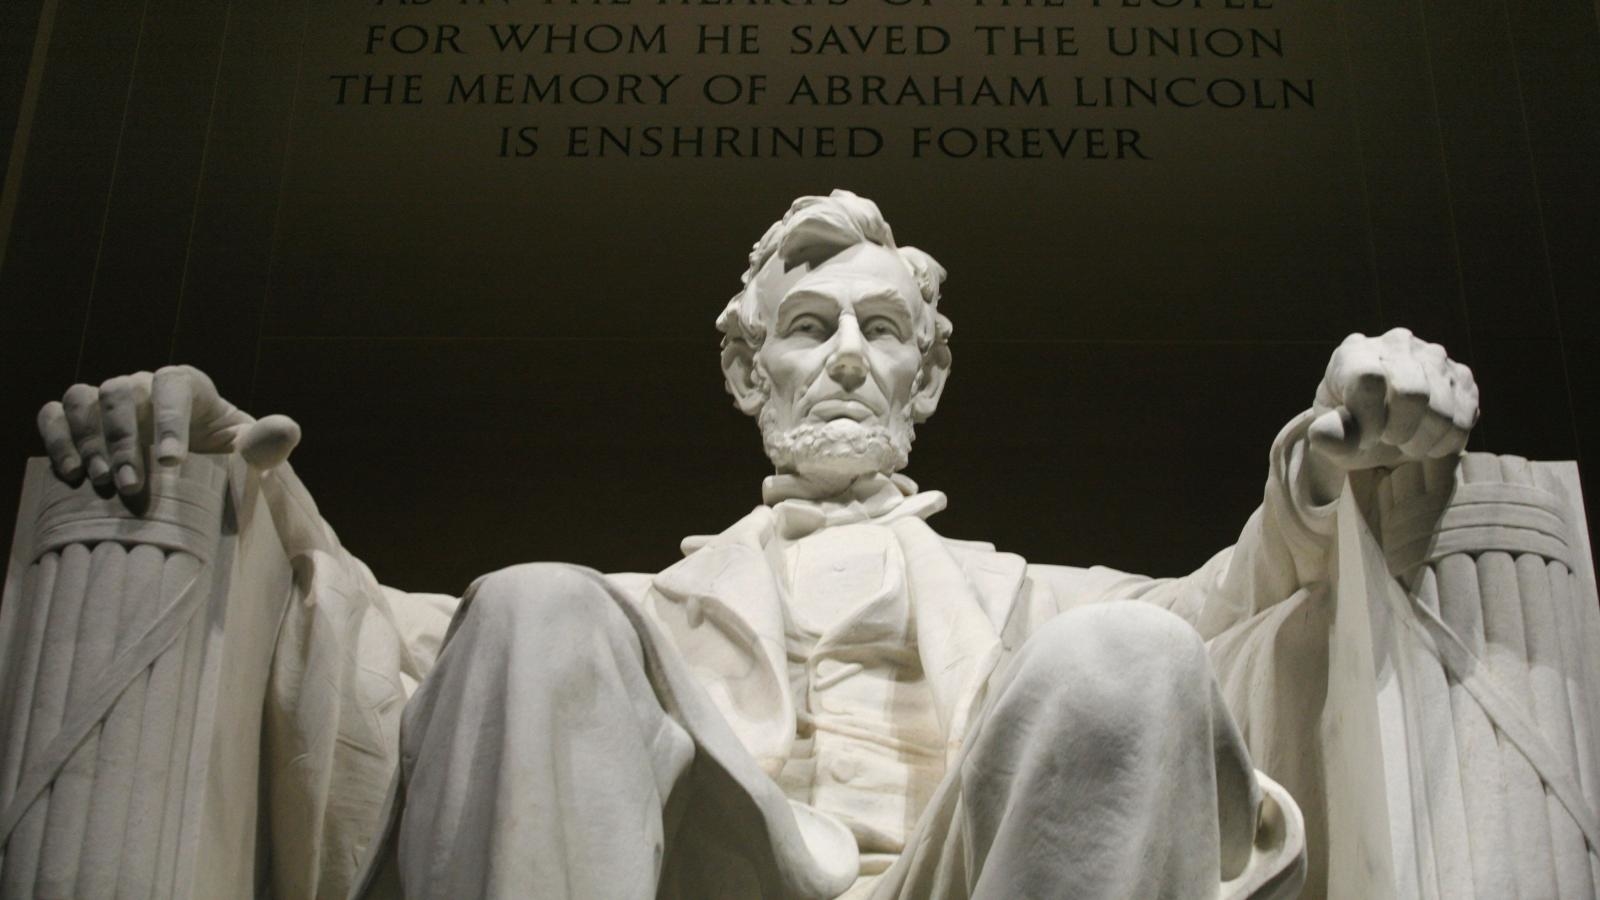 Linkolnov memorijal